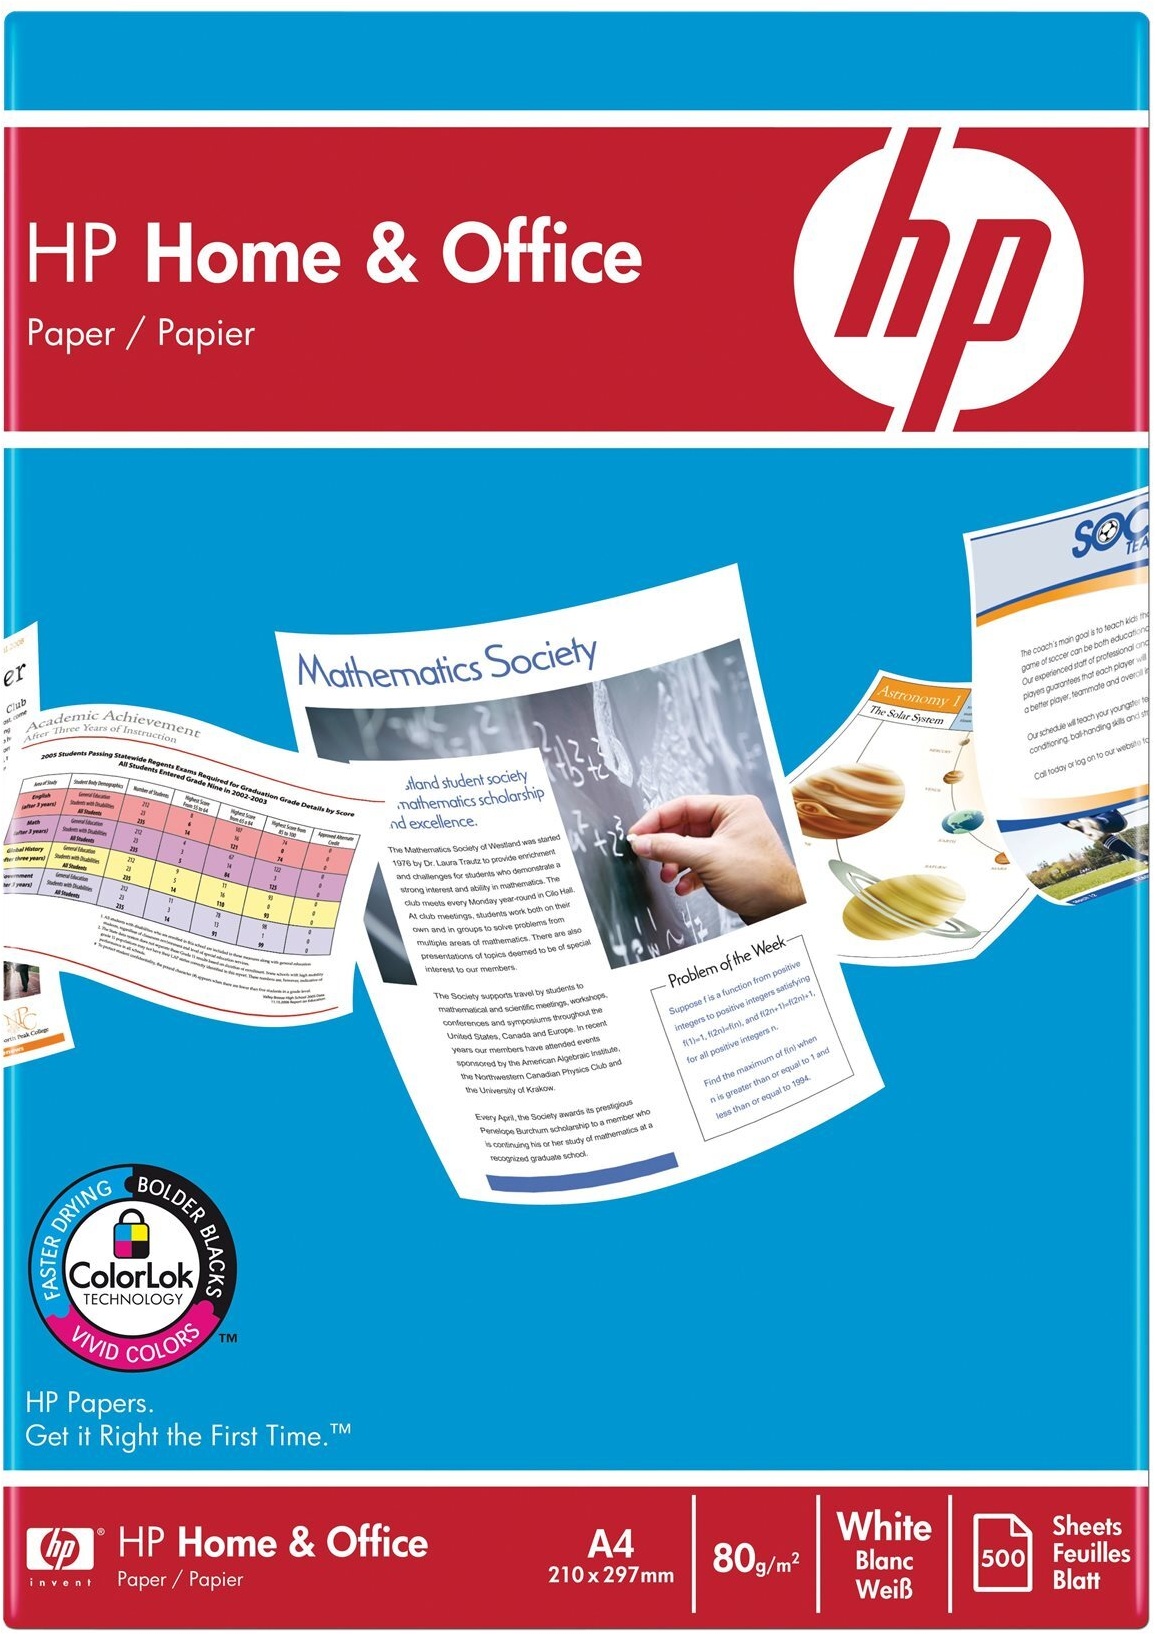 HP Home&Office Druckerpapier A4-Dokumente 500 Blatt CHP150 HP Kopierpapier | 210 x 297 mm | 80 g/m2